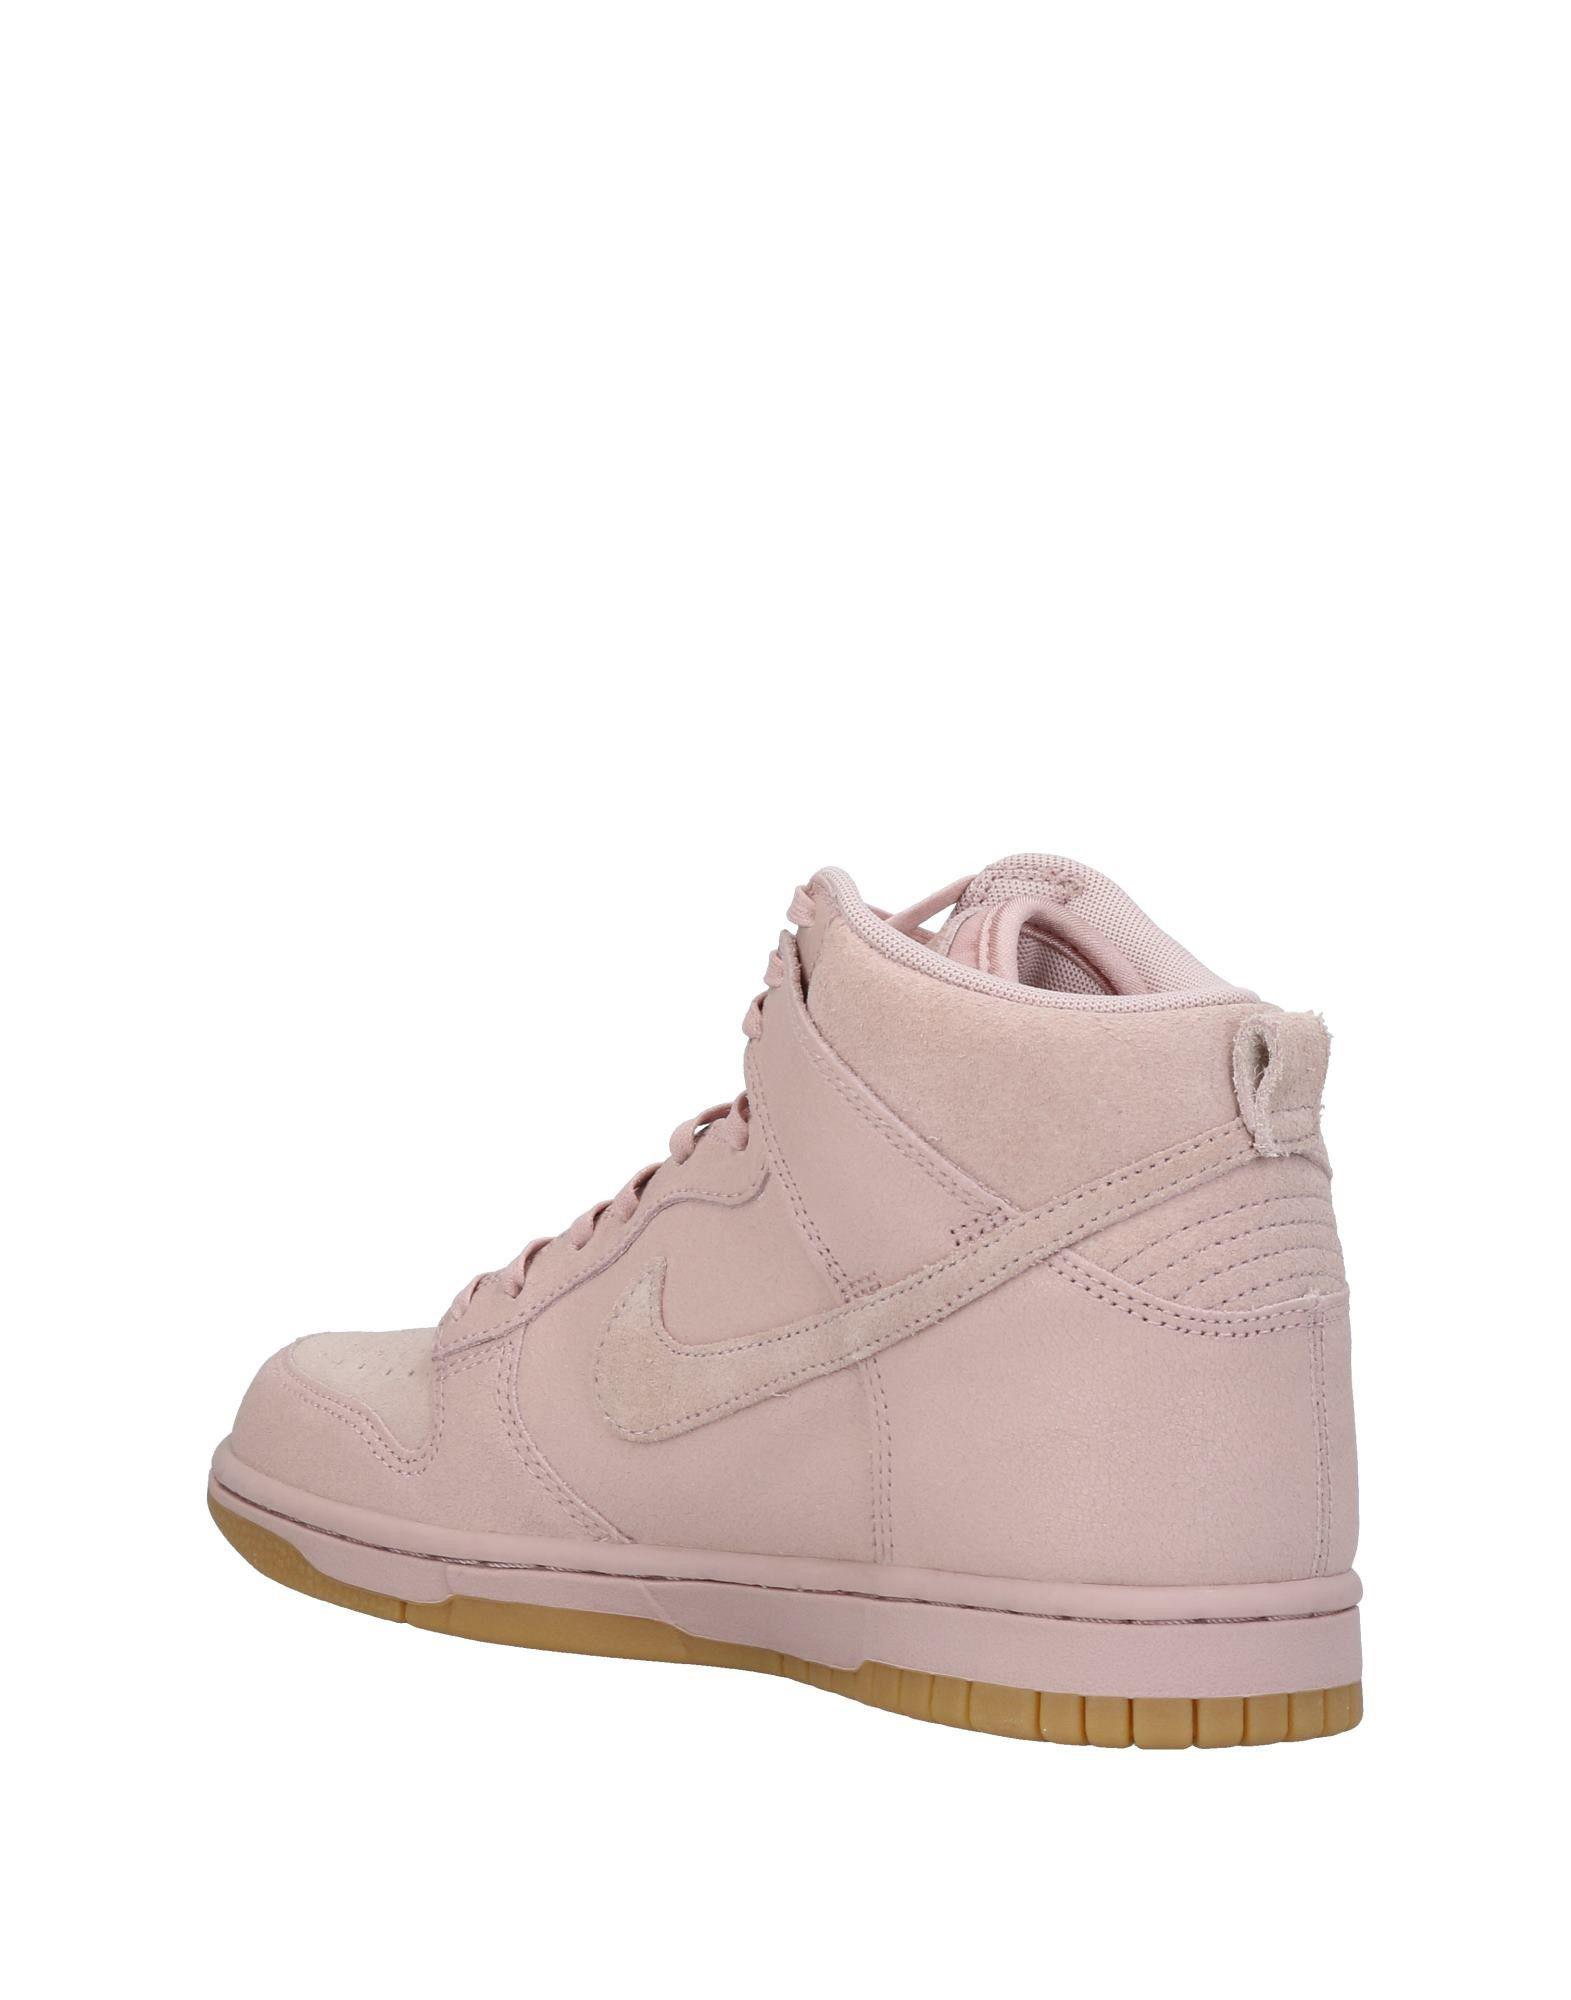 Nike Suede High-tops & Sneakers in Pastel Pink (Pink) | Lyst Australia